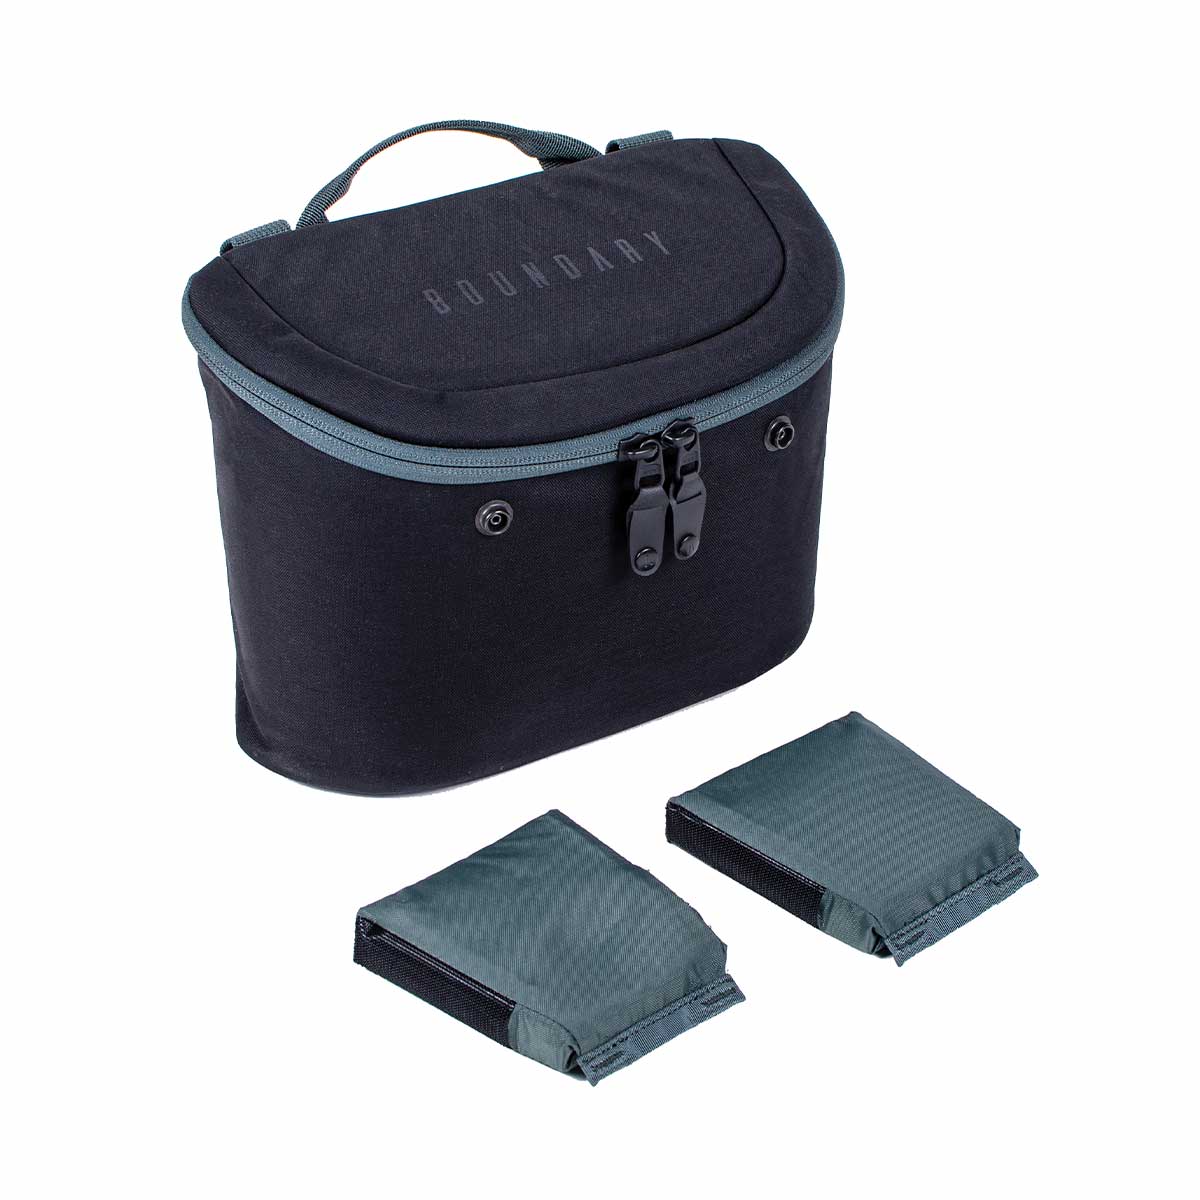 Boundary Supply Errant Pack Backpack Starter Kit (Obsidian Black)